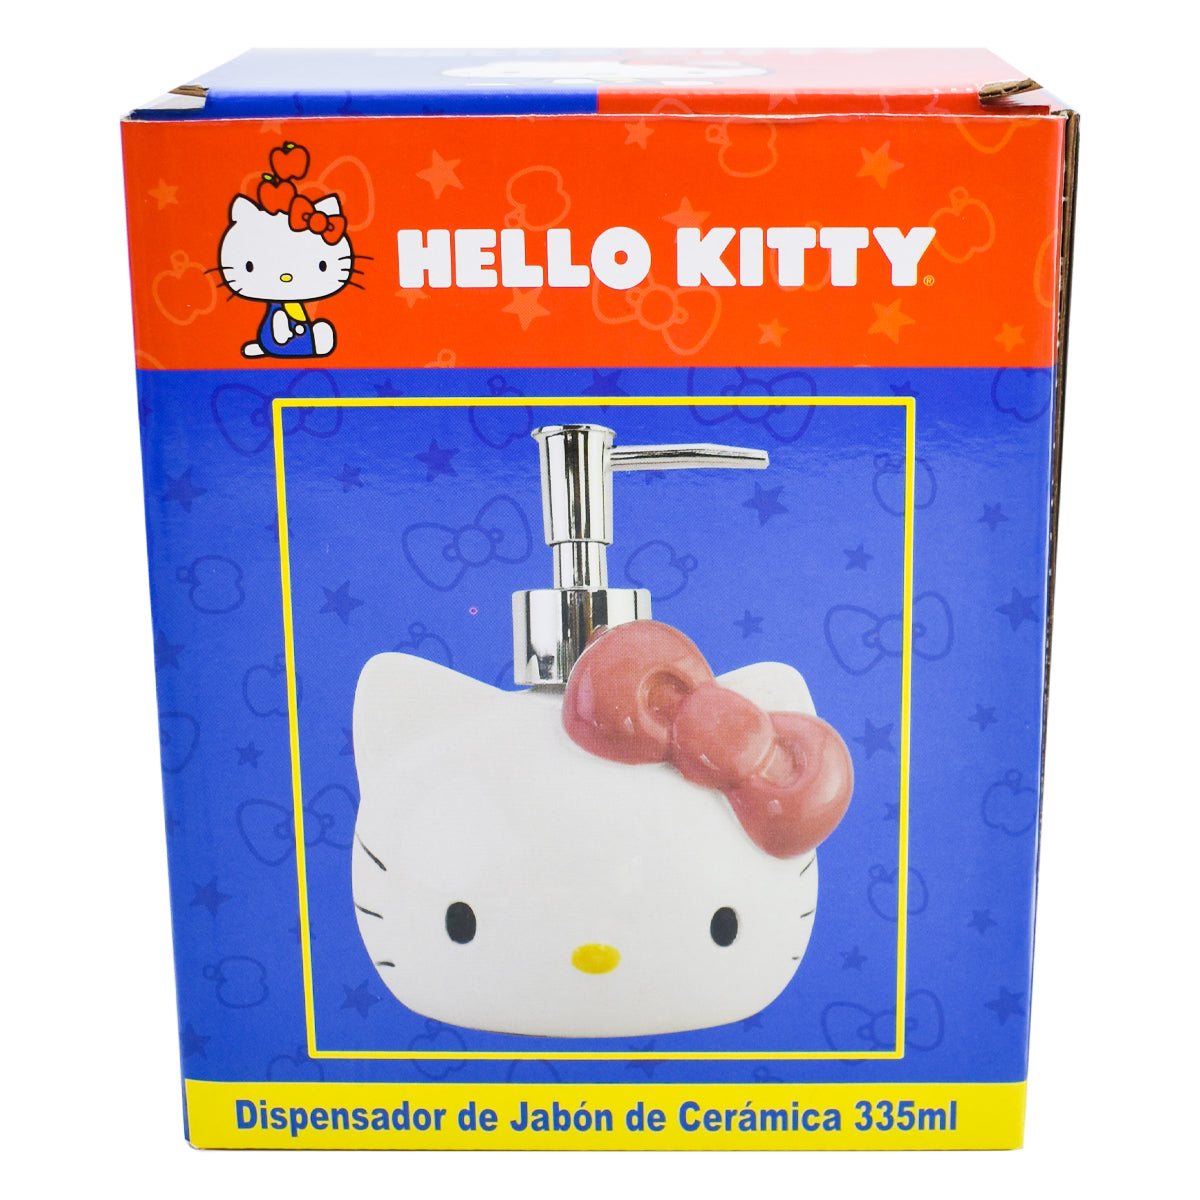 Fun Kids Dispensador De Jabon De Ceramica: Sanrio - Hello Kitty 335 ml